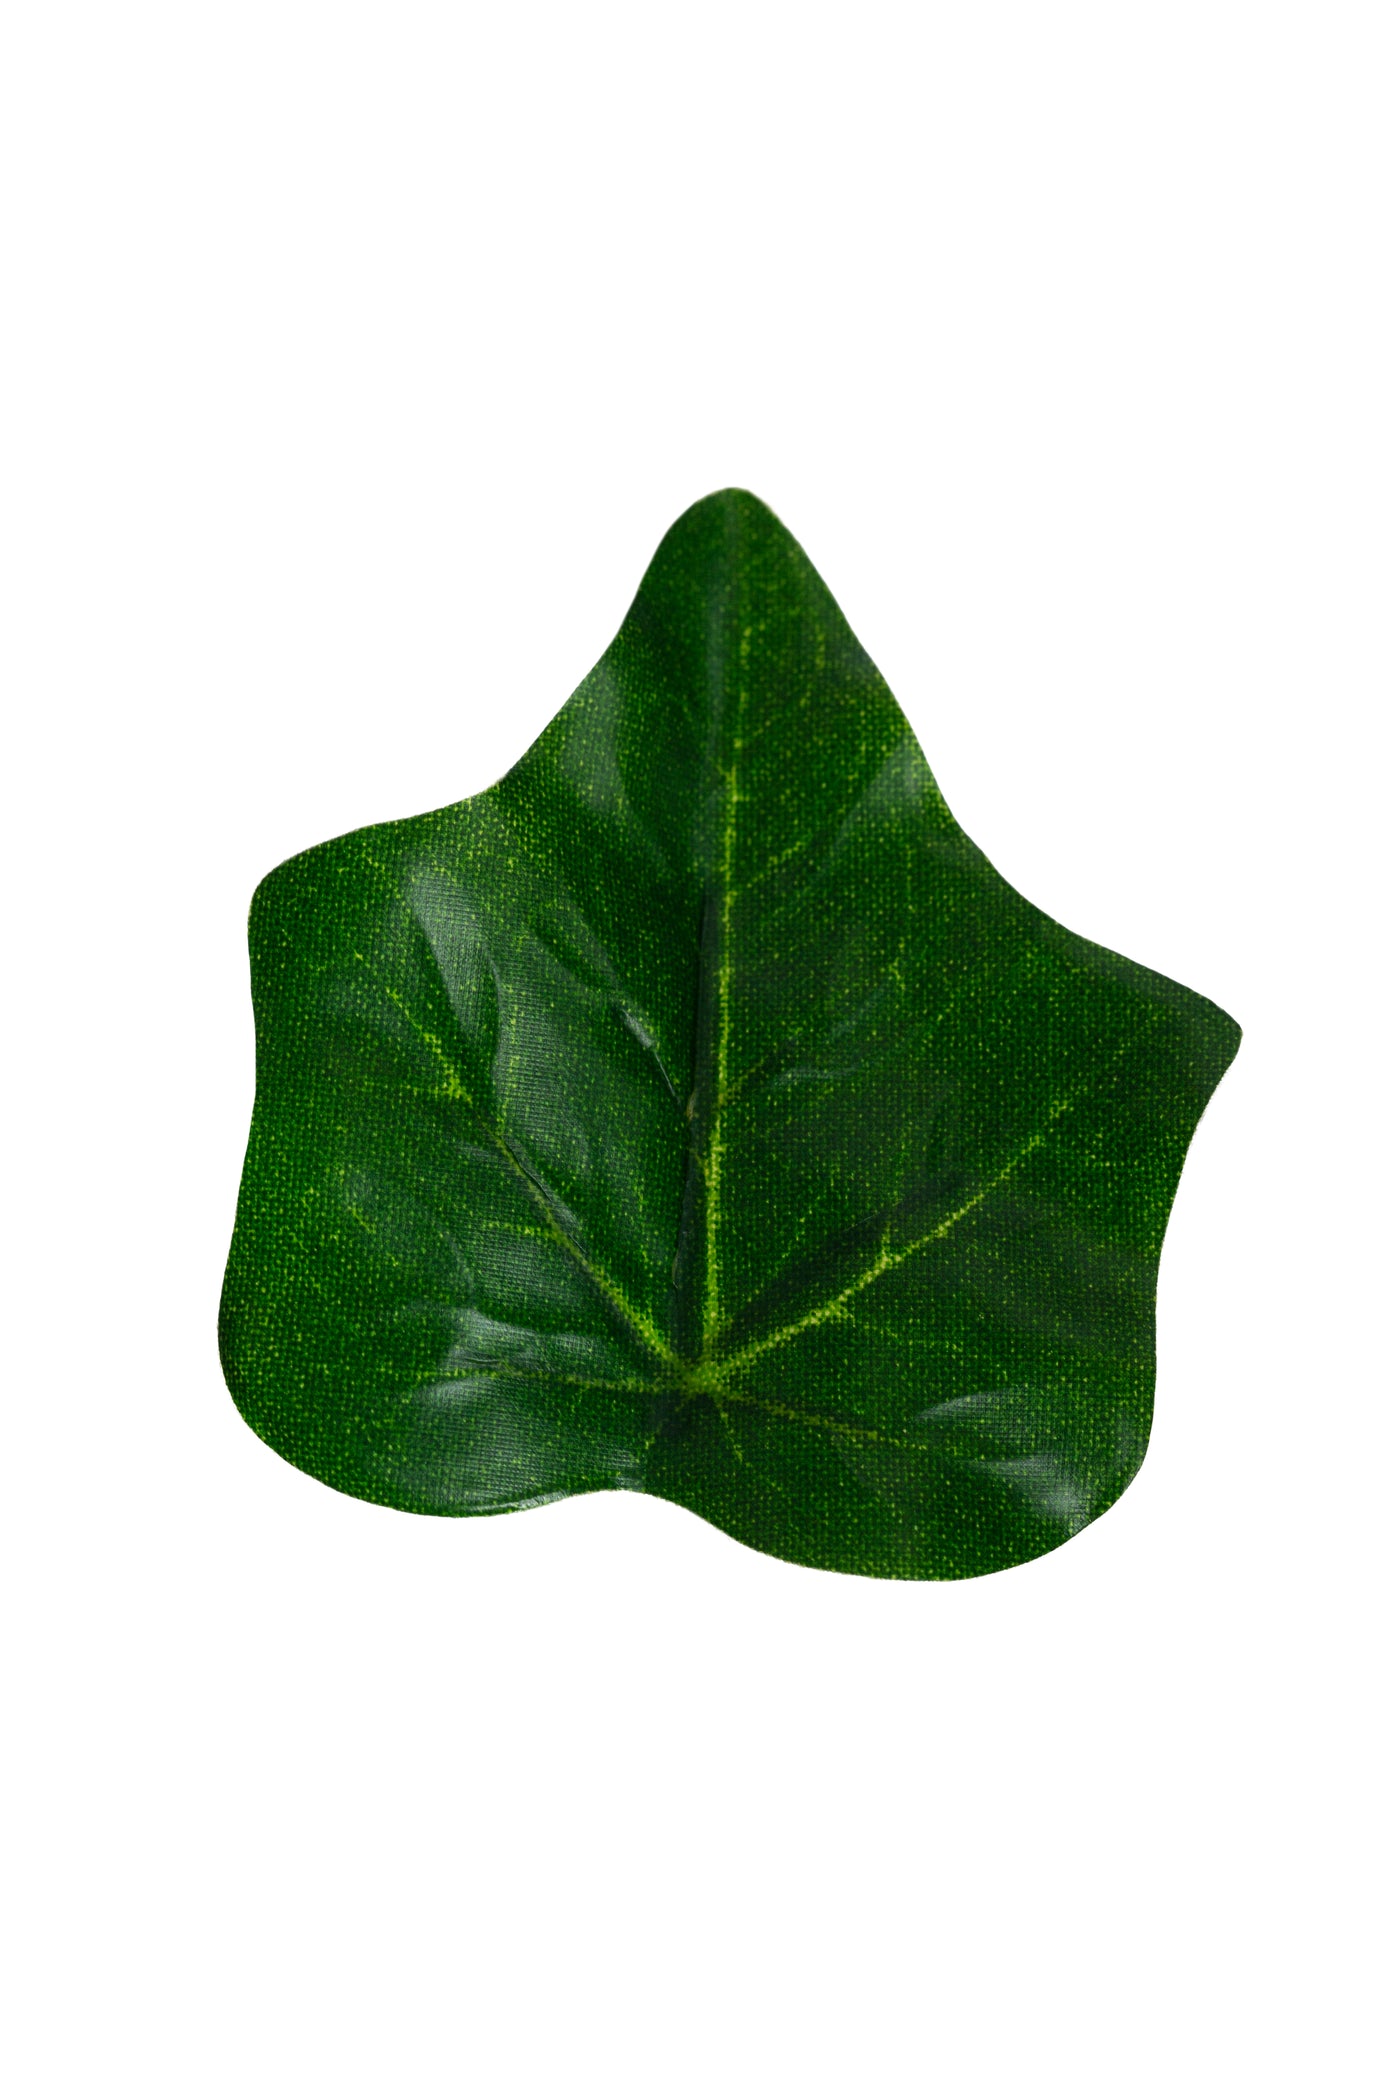 Iedera artificiala H150cm cu frunze verde inchis pentru exterior cu protectie UV